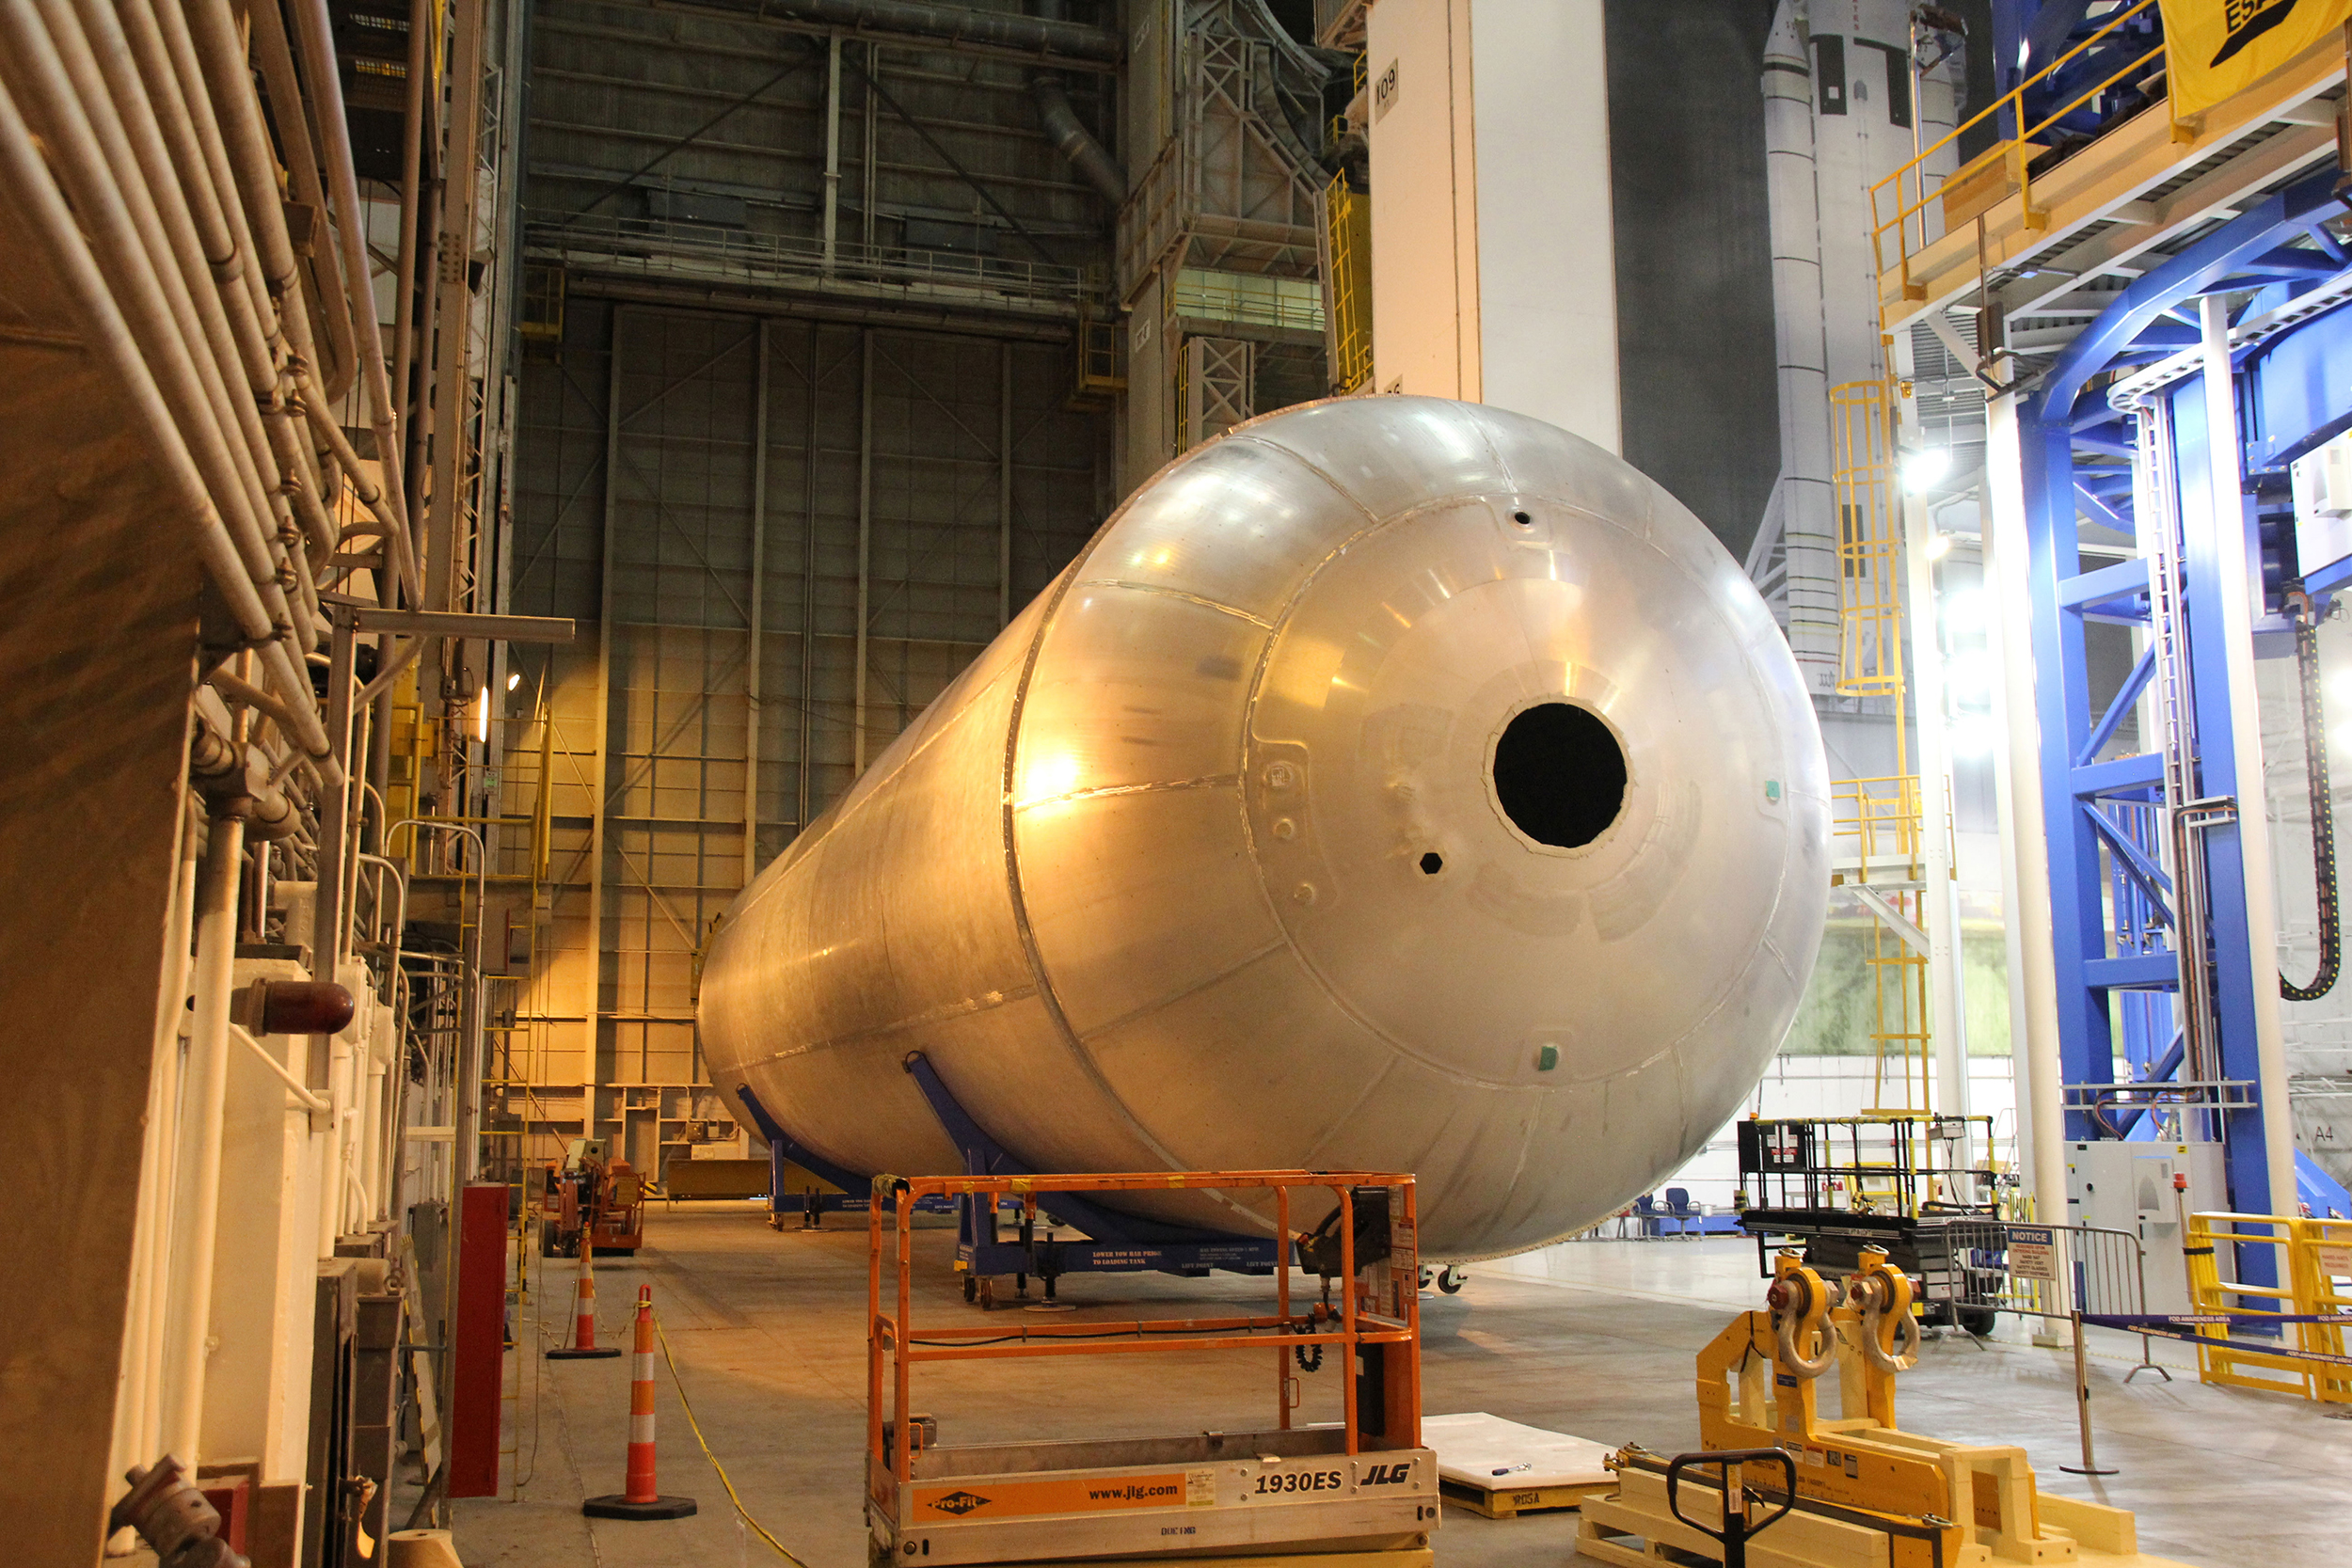 Constructing a new ride: NASAâs deep space rocket takes shape in New Orleans - RocketSTEM